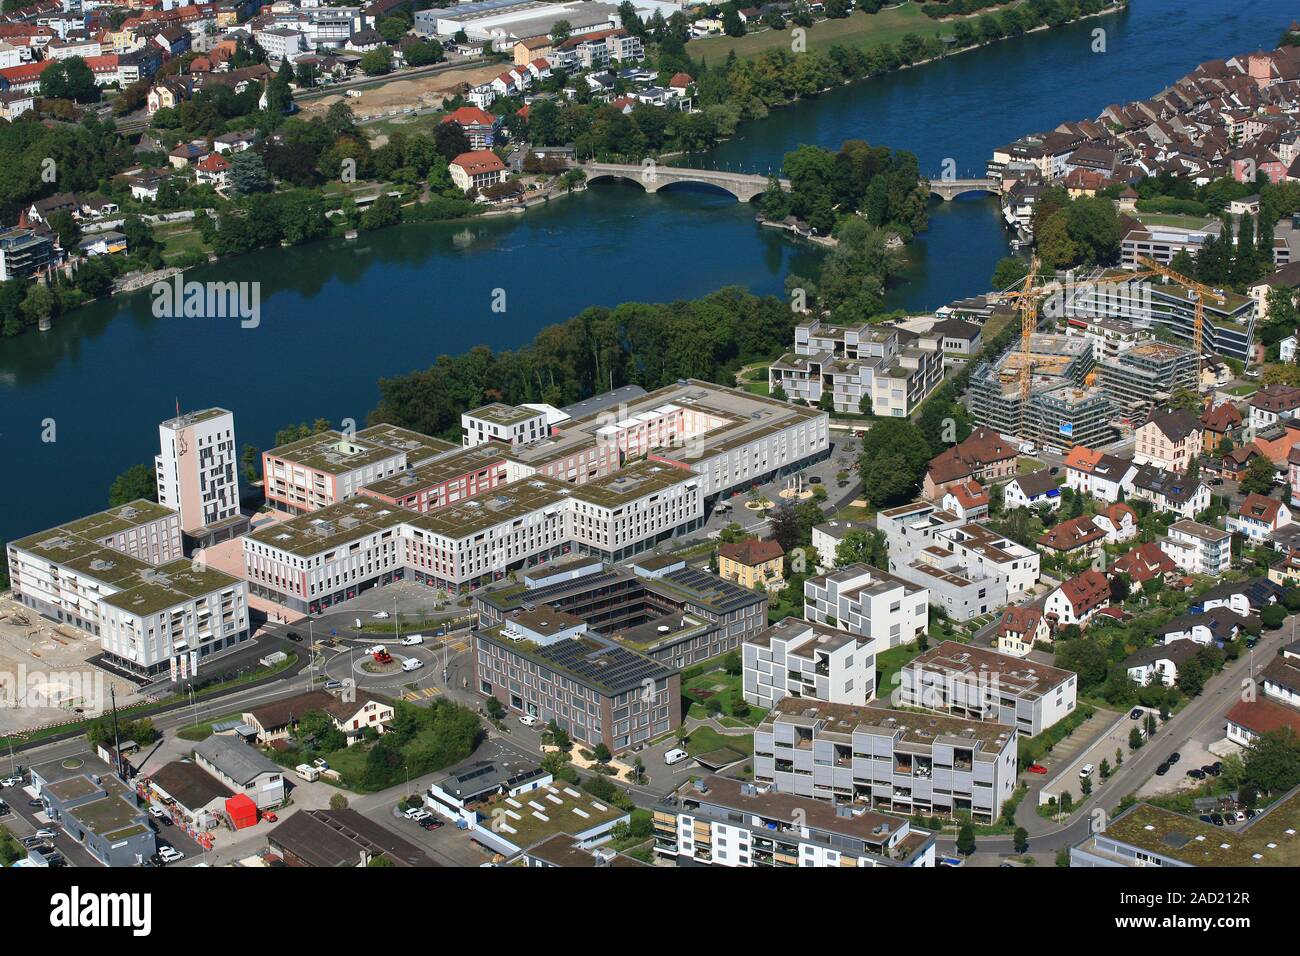 New development area Salmenpark am Rhein in Rheinfelden, Switzerland Stock Photo